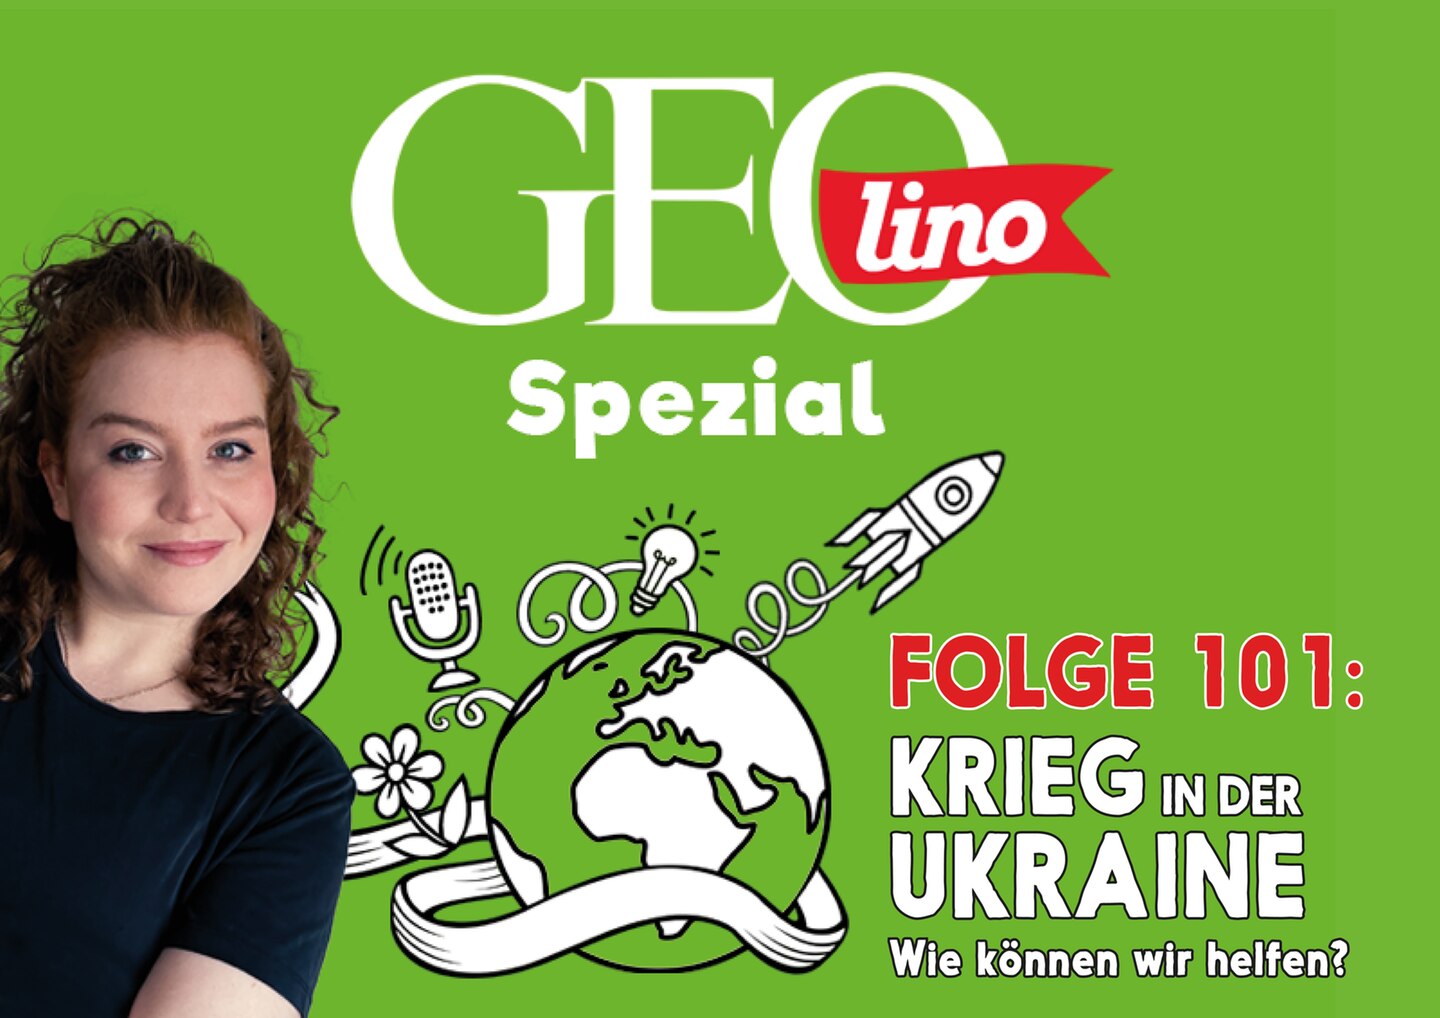 In Folge 101 unseres GEOlino-Podcasts ordnen wir euch ein, wie Geflüchteten aus der Ukraine geholfen wird.